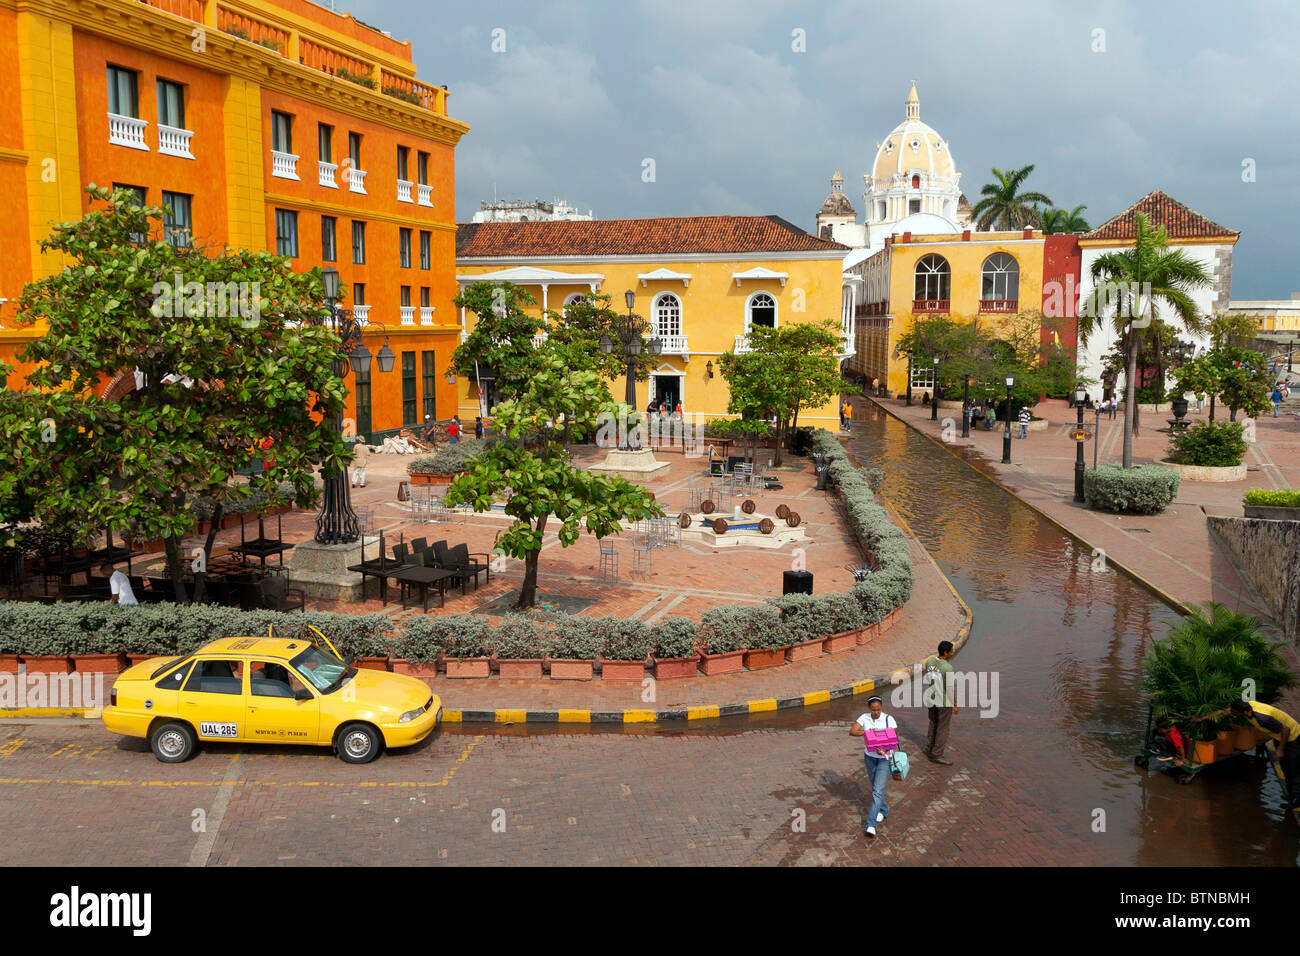 Une photo de Cartagena, Colombie, pris dans les vieux murs Banque D'Images